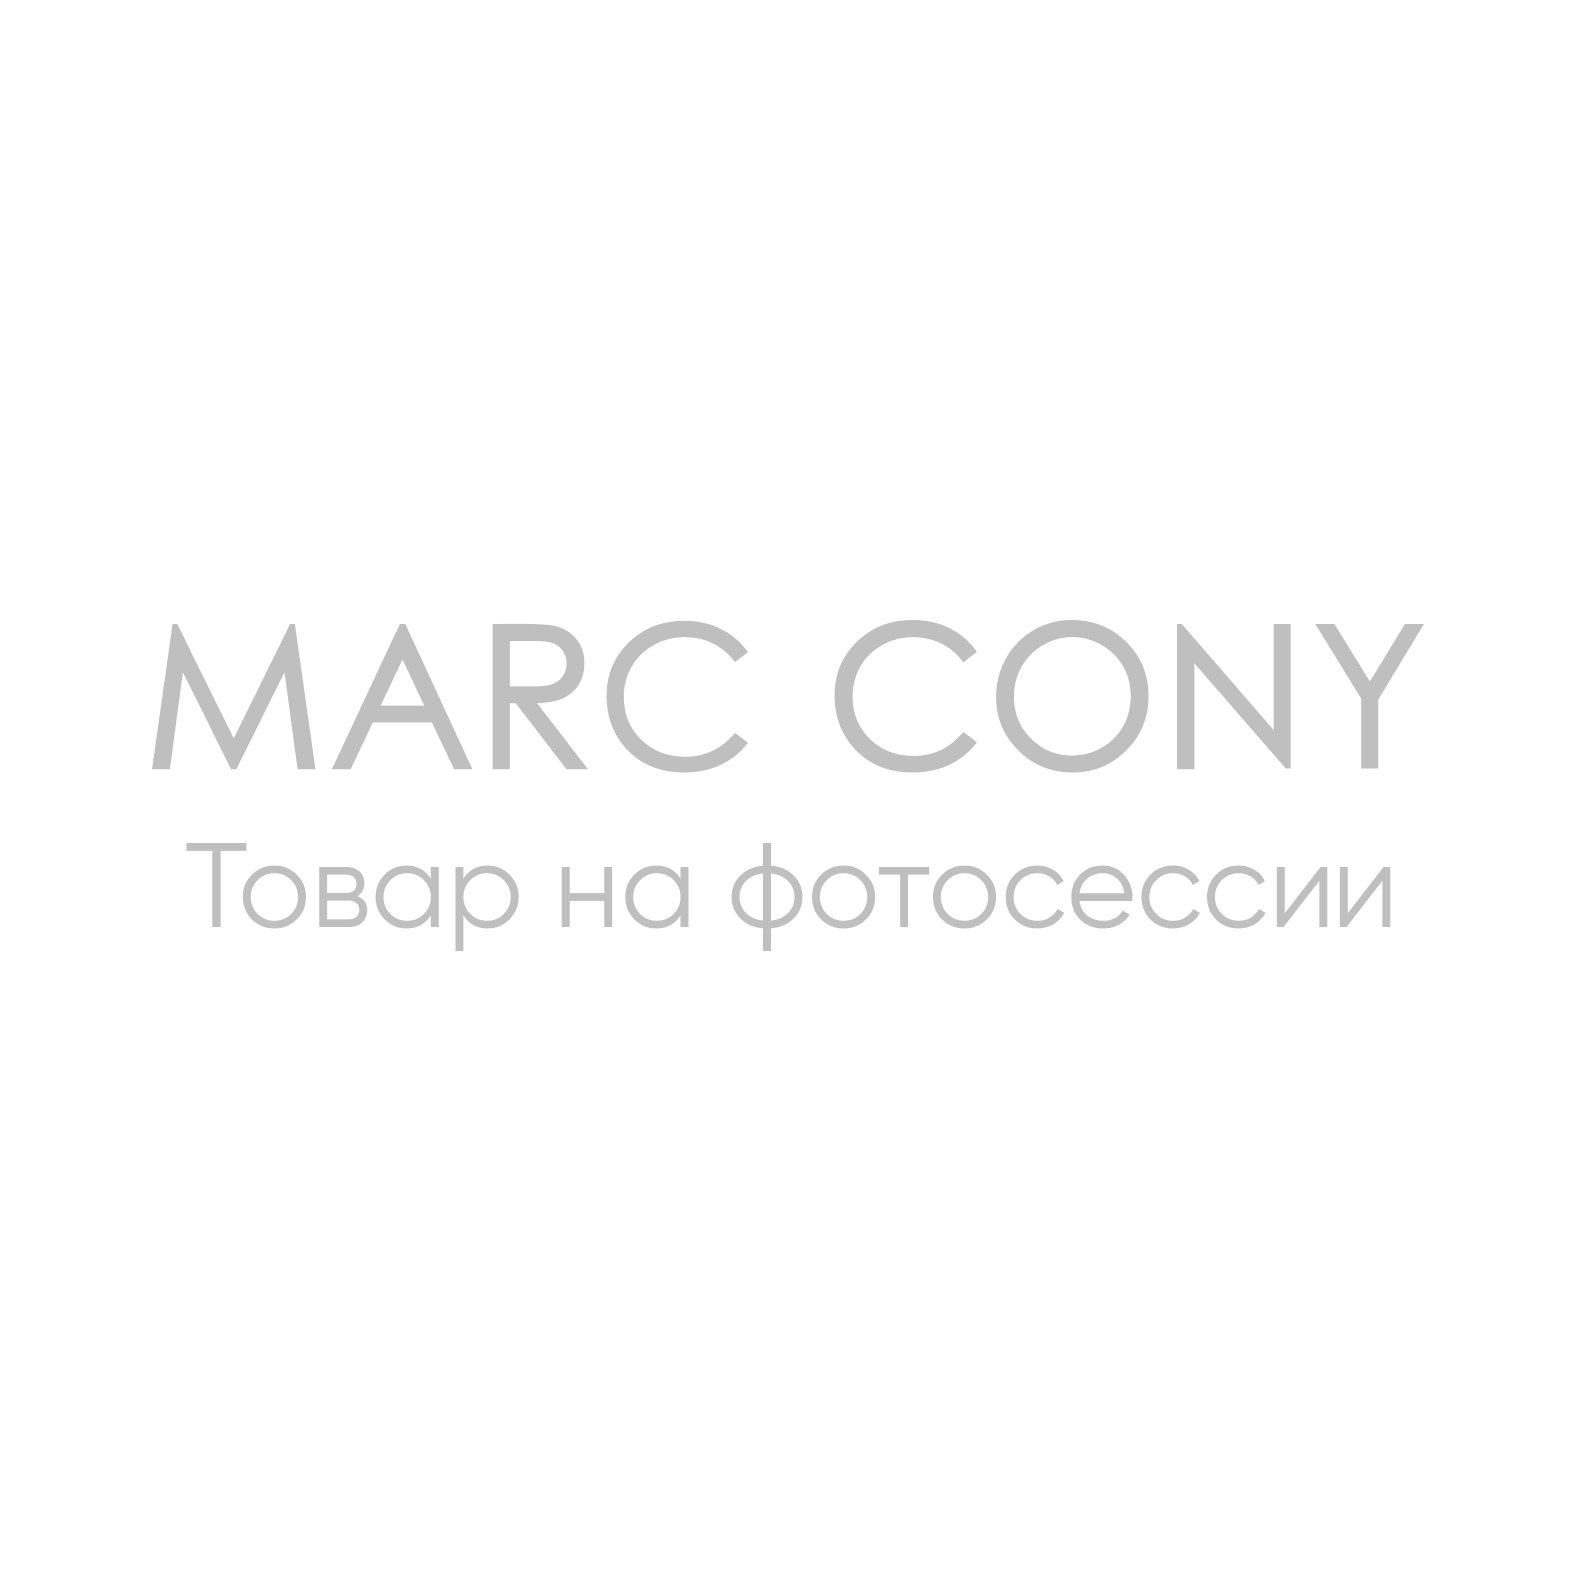 Палантин Marc Cony